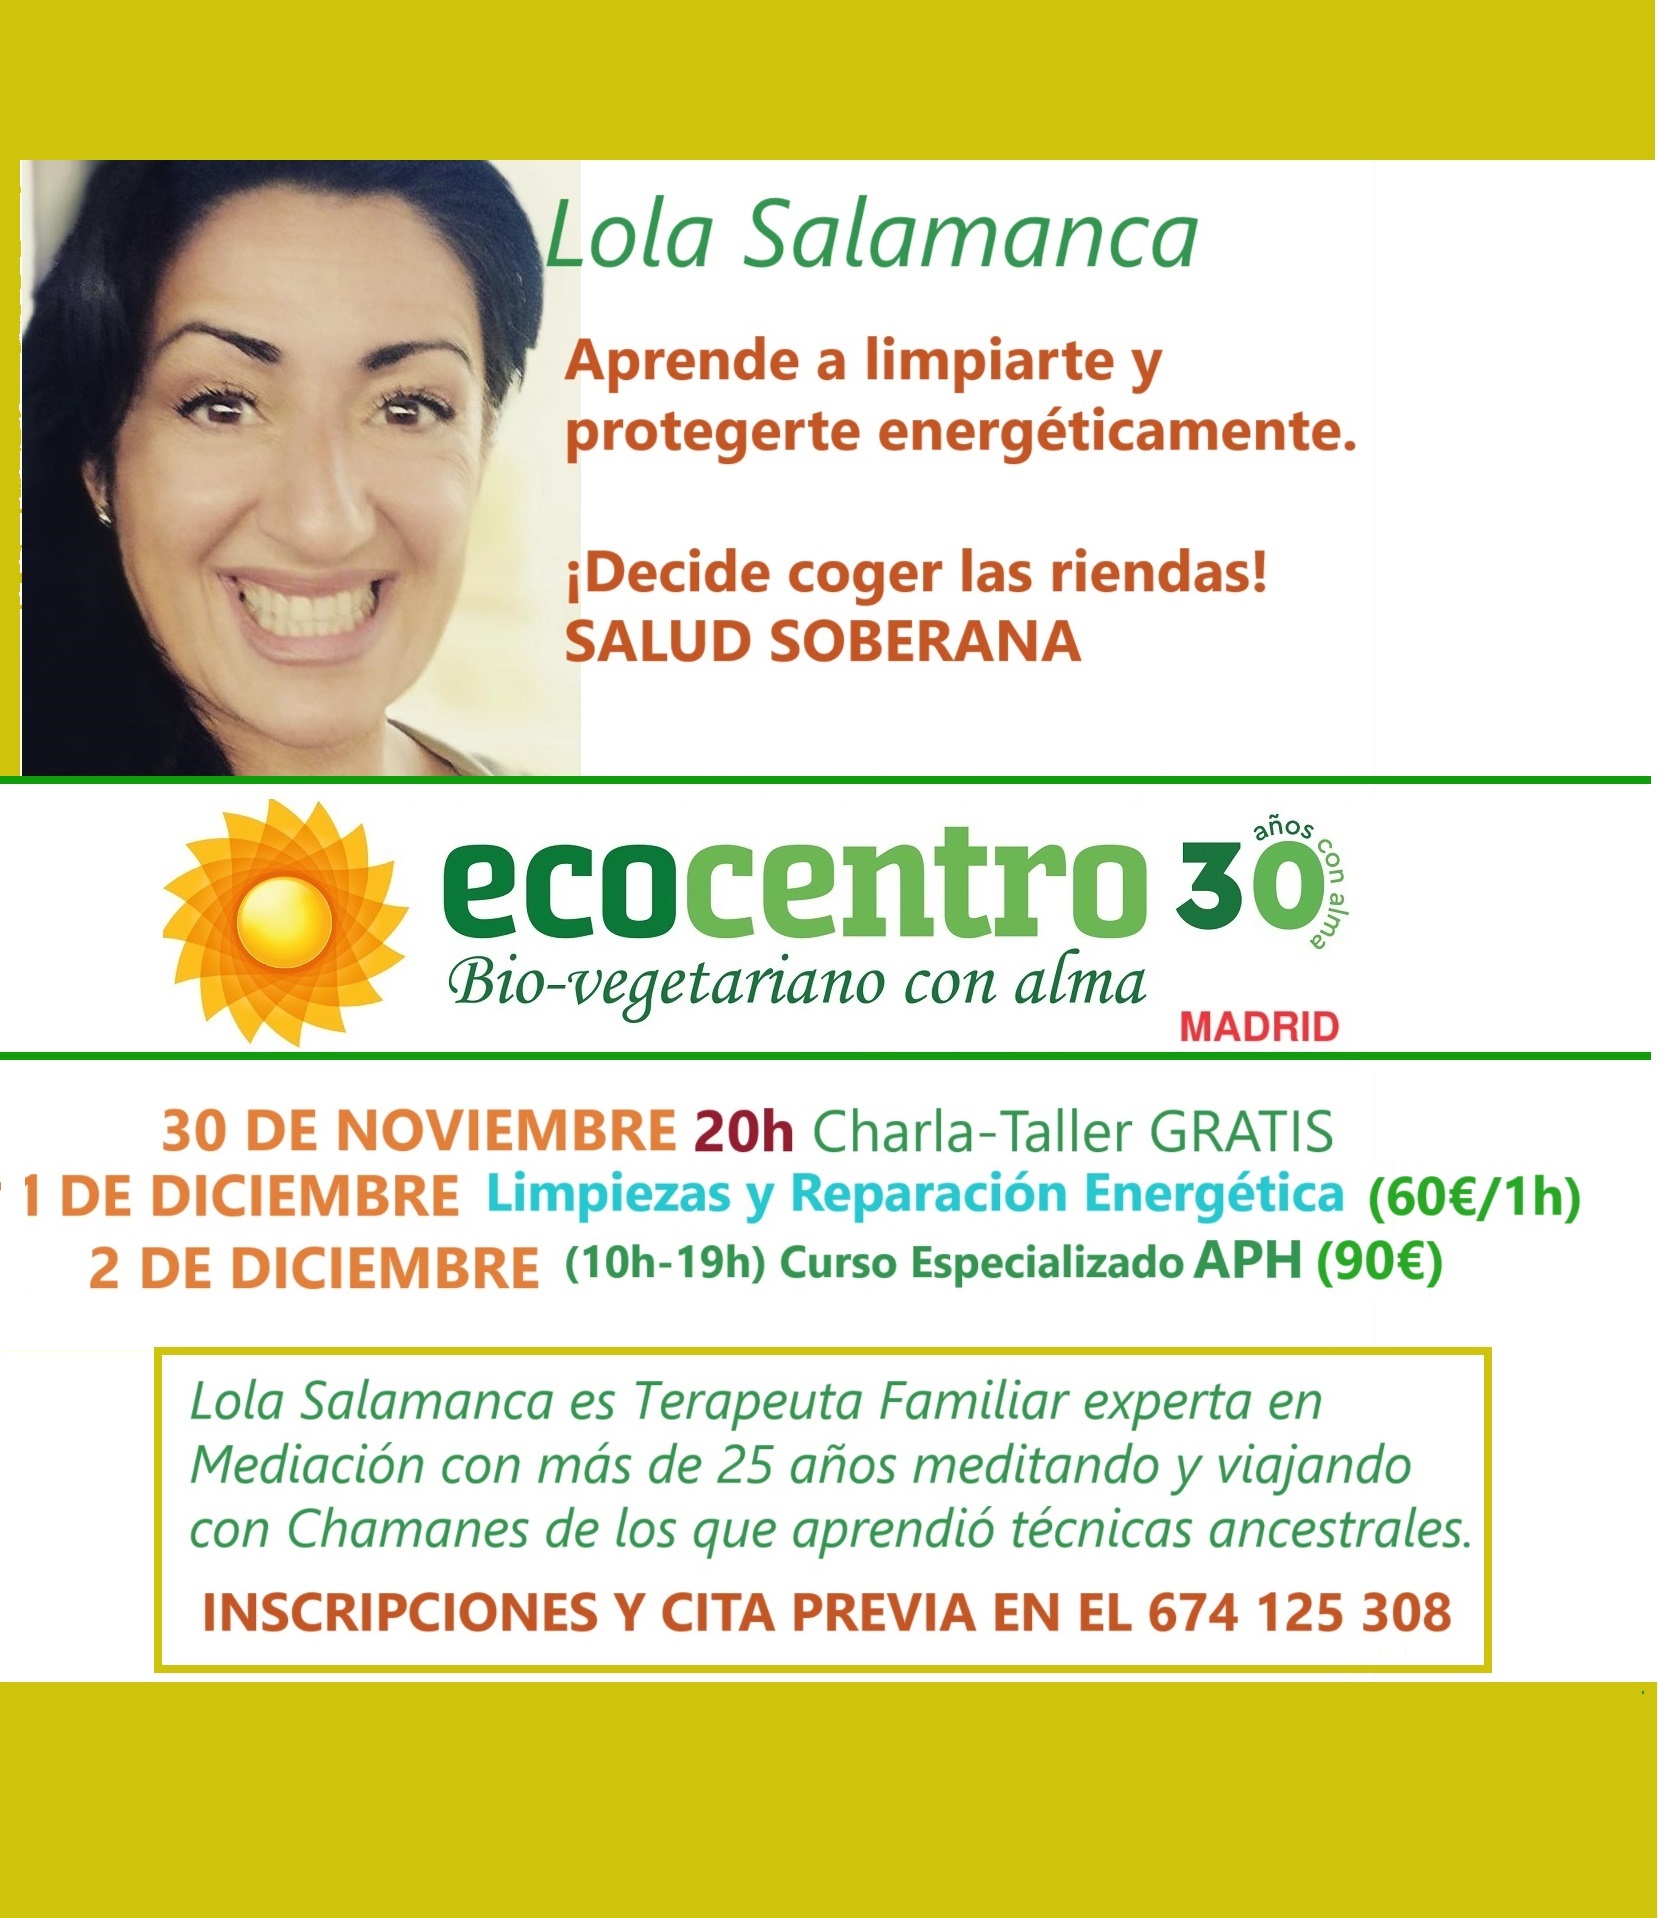 Lola Salamanca en Ecocentro